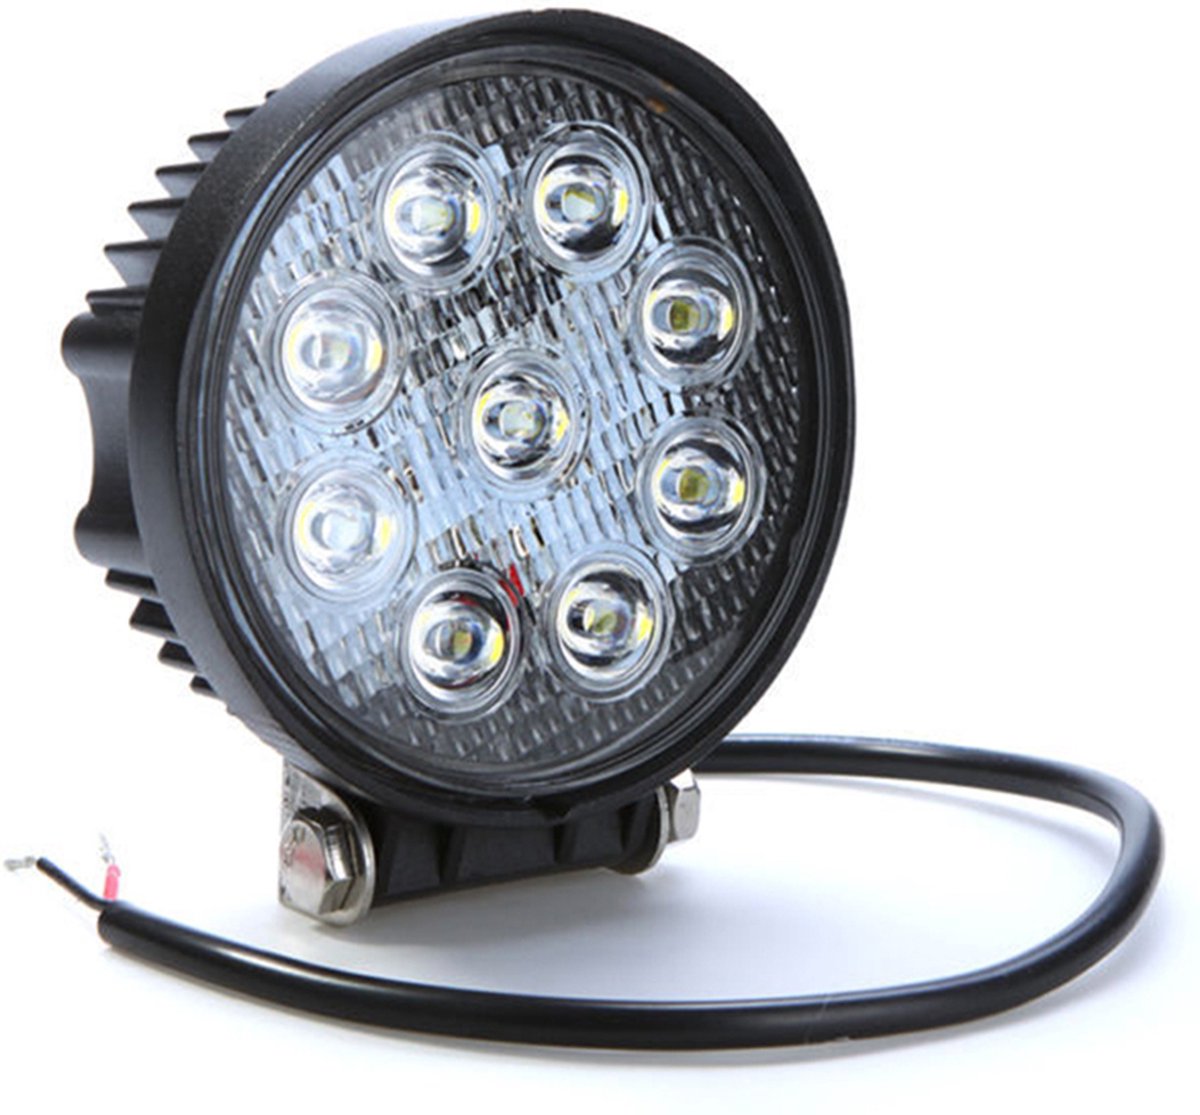 Werklamp LED - Rond - 24 Watt - Ledlamp - Bouwlamp